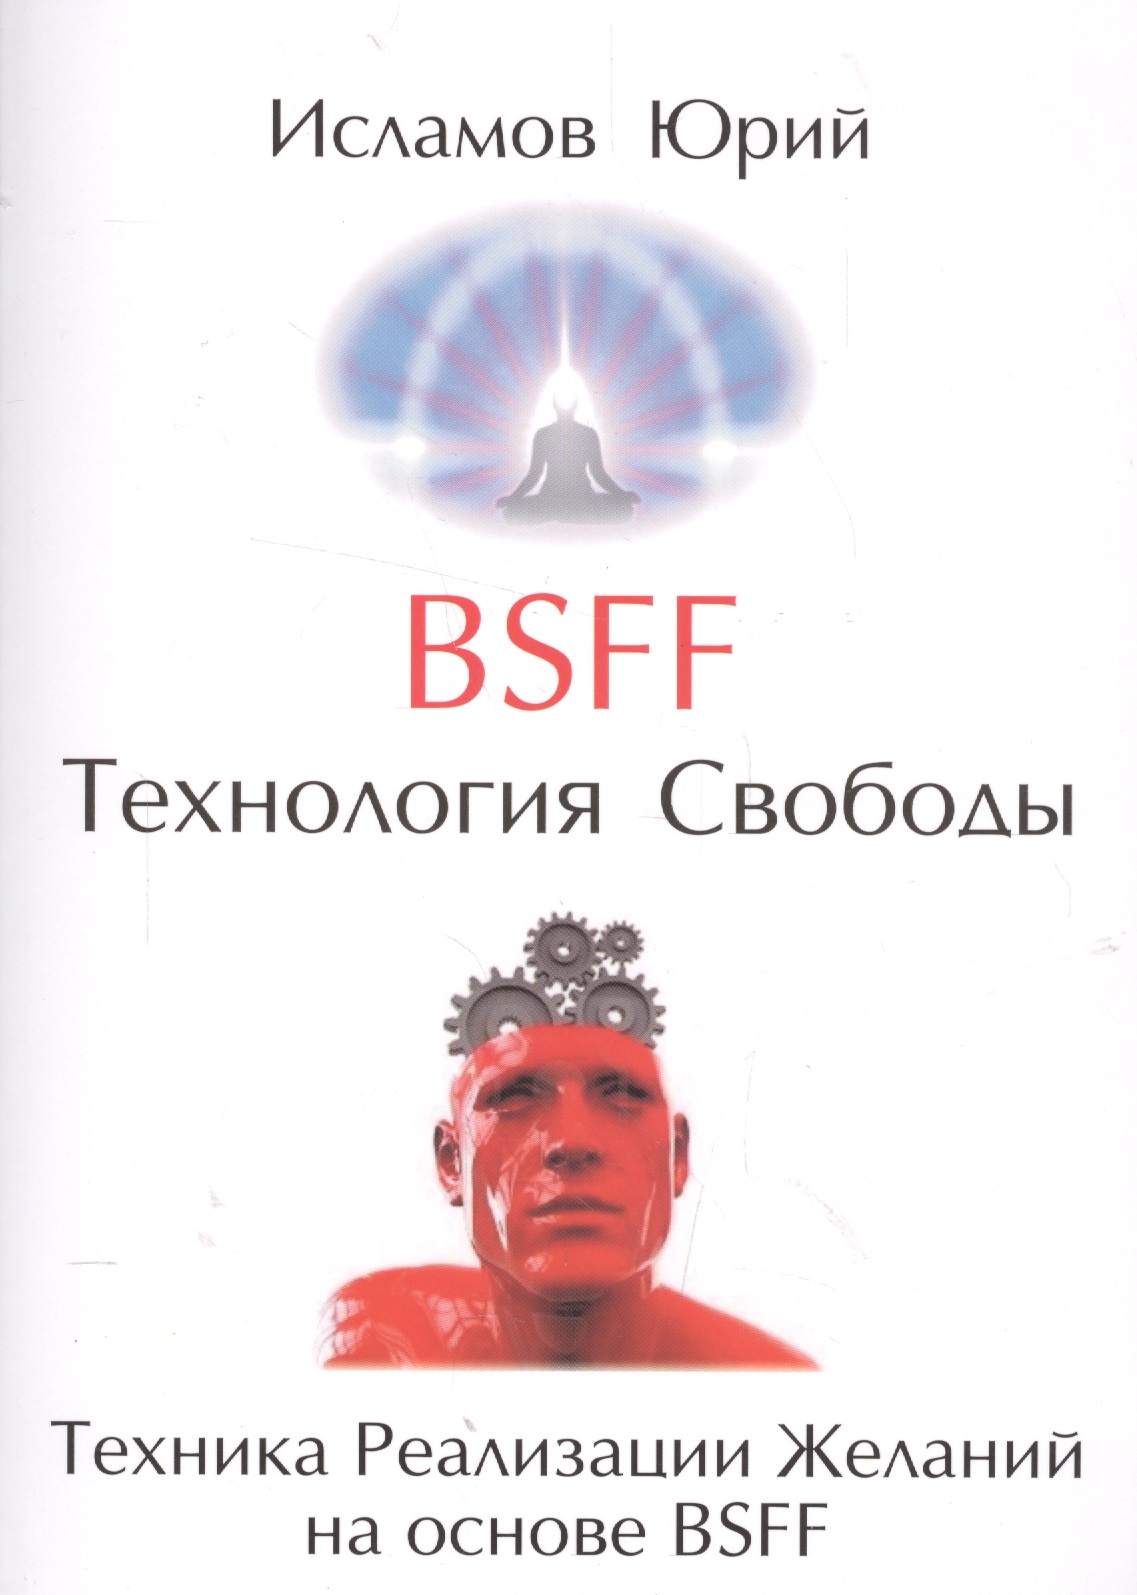 BSFF   () 